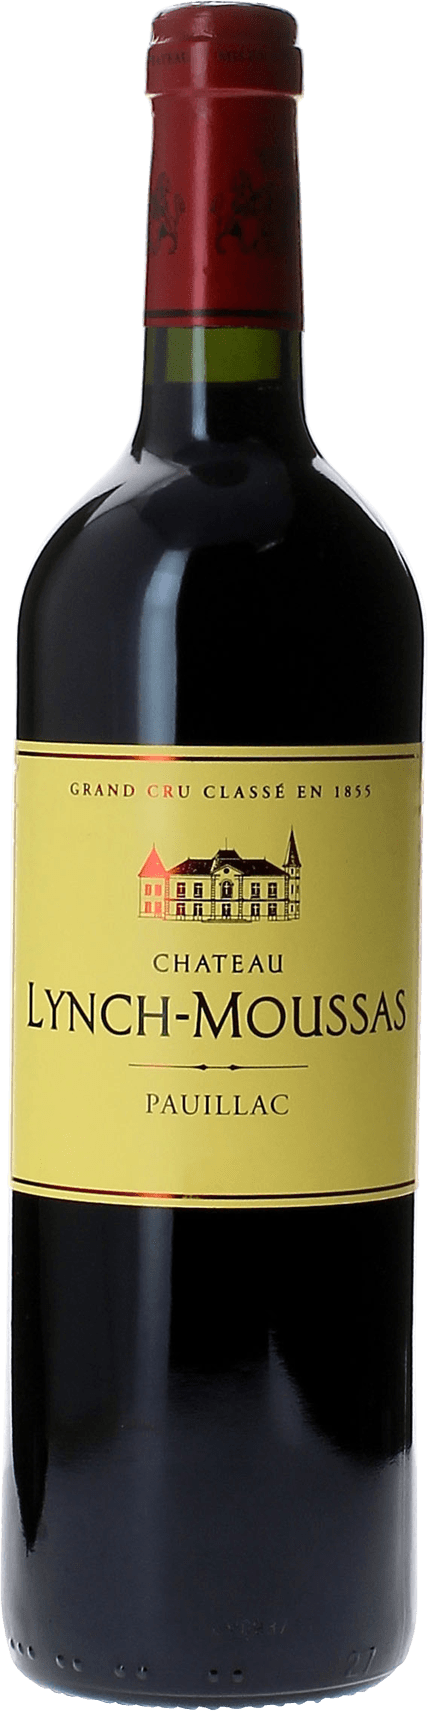 Lynch moussas 1997  Pauillac, Bordeaux rouge